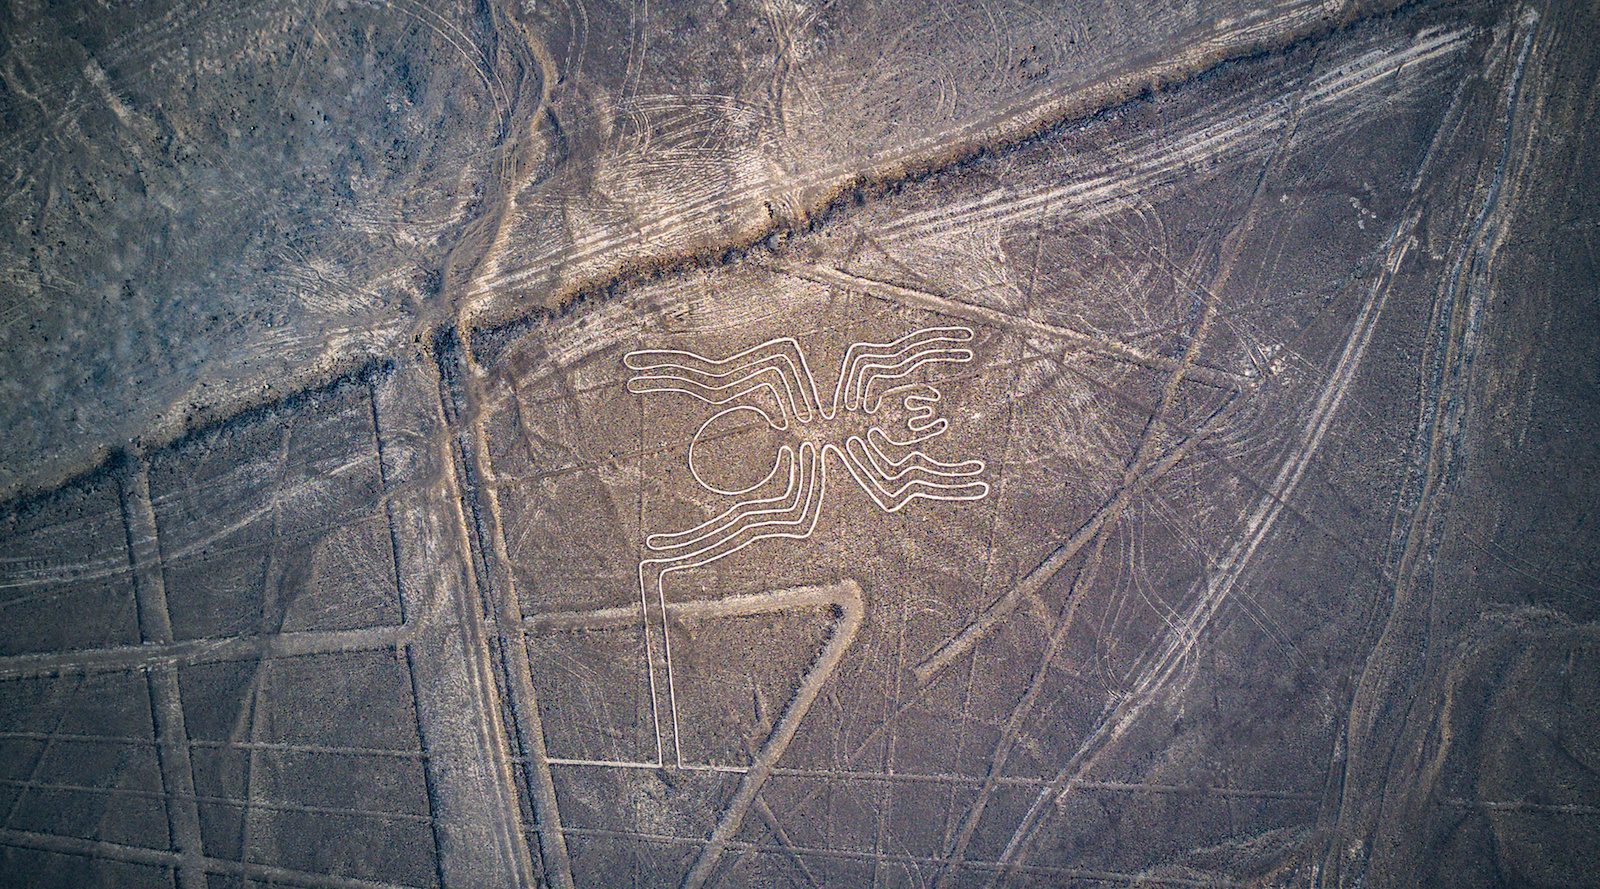 Nazca Line